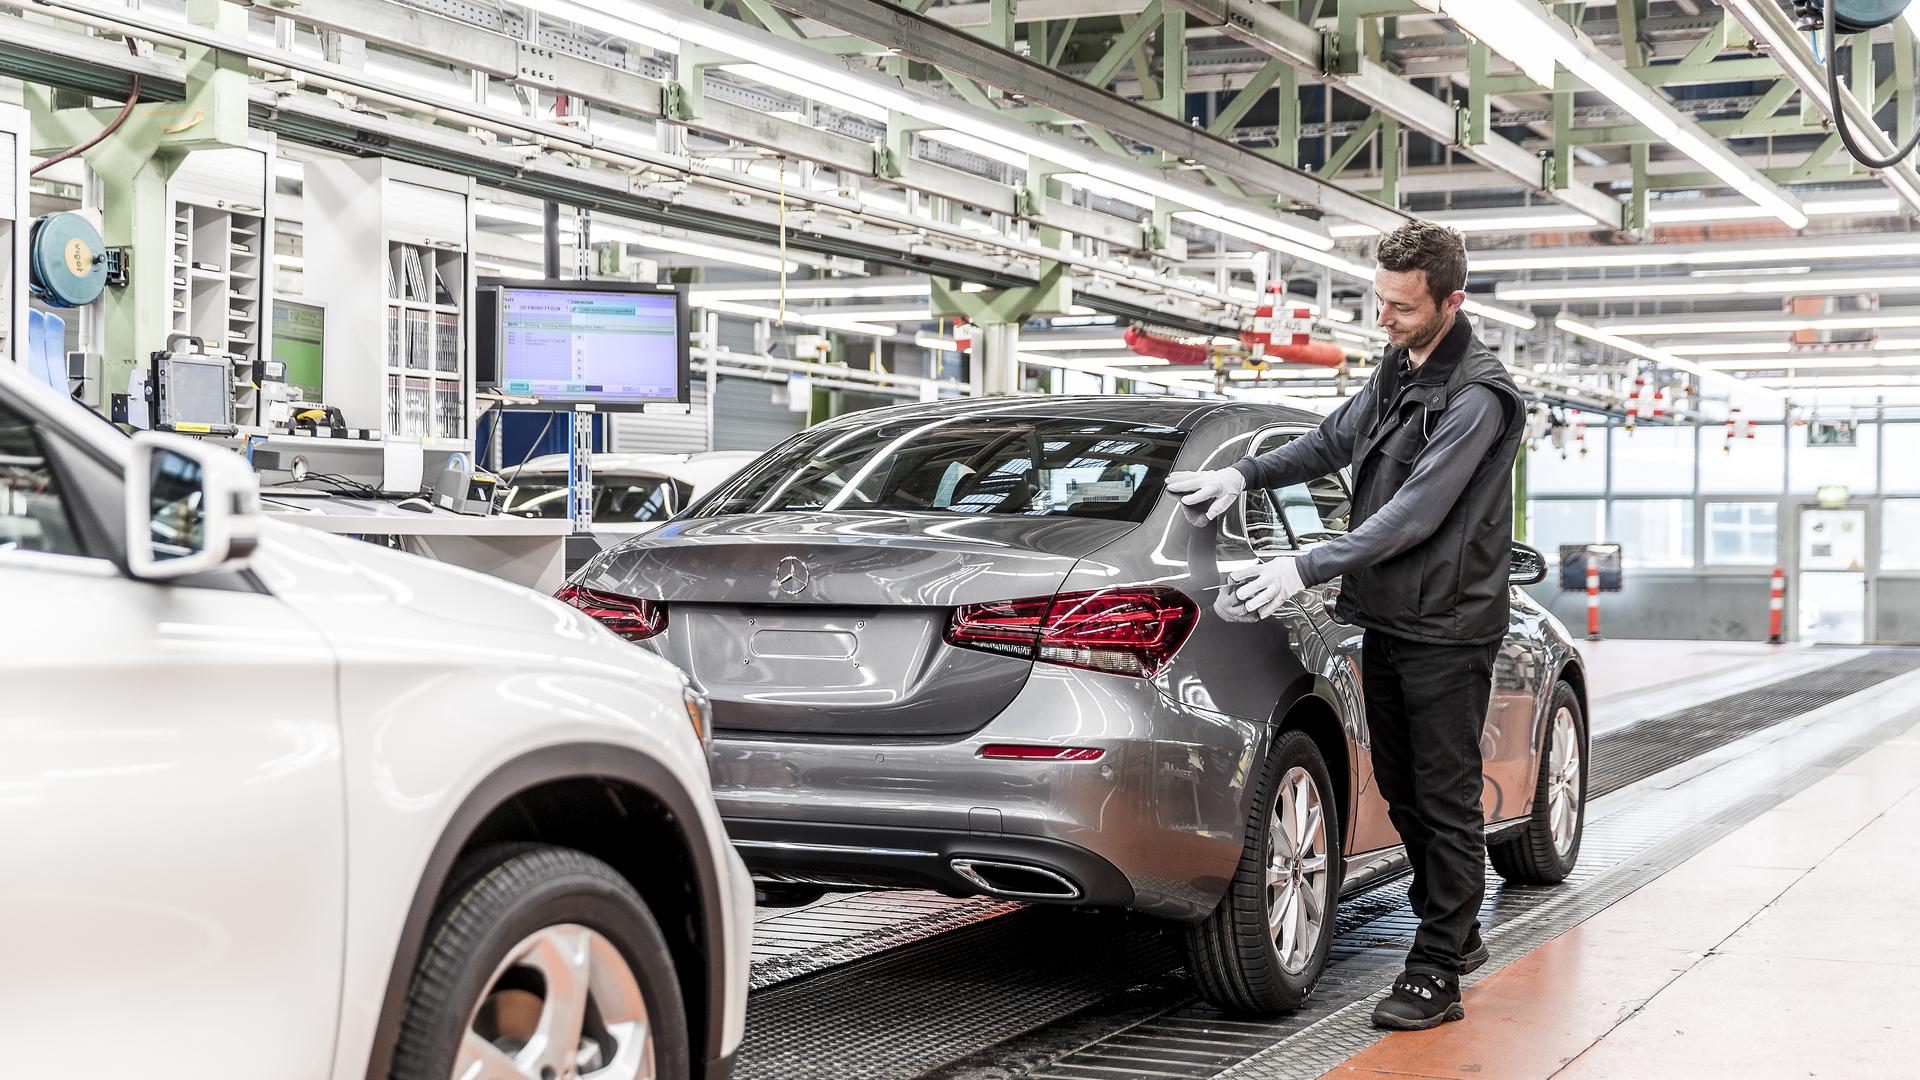 Produktionsstart der neuen A-Klasse Limousine im Mercedes-Benz Werk Rastatt: Das fünfmillionste Mercedes-Benz Kompaktfahrzeug „Made in Rastatt“ ist seit dem Anlauf der ersten A-Klasse im Jahr 1997 vom Band gelaufen. 